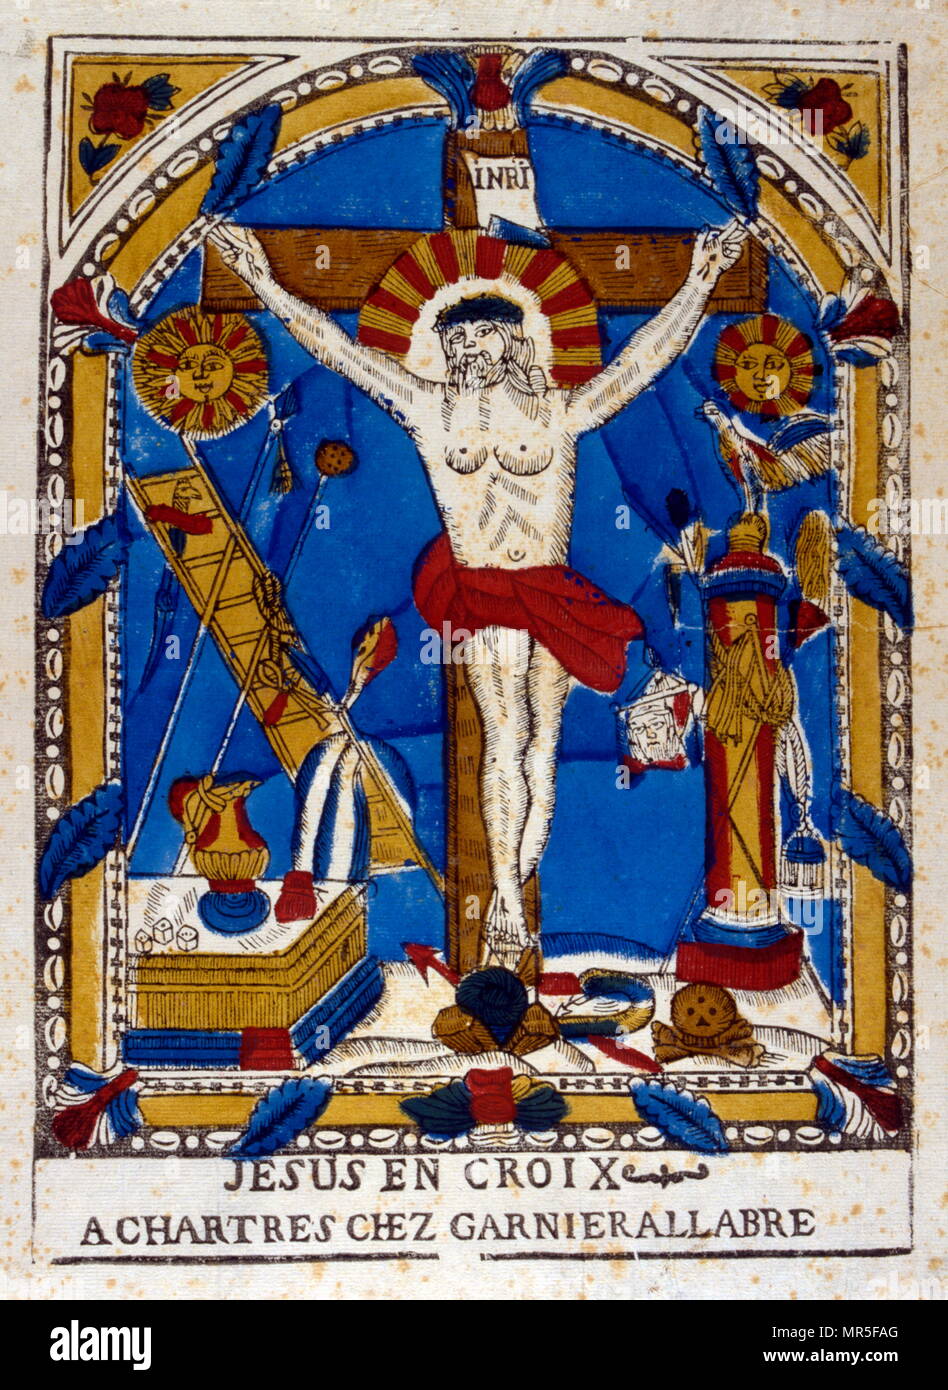 19e siècle imprimer populaires français de la crucifixion du Christ, vers 1860 Banque D'Images